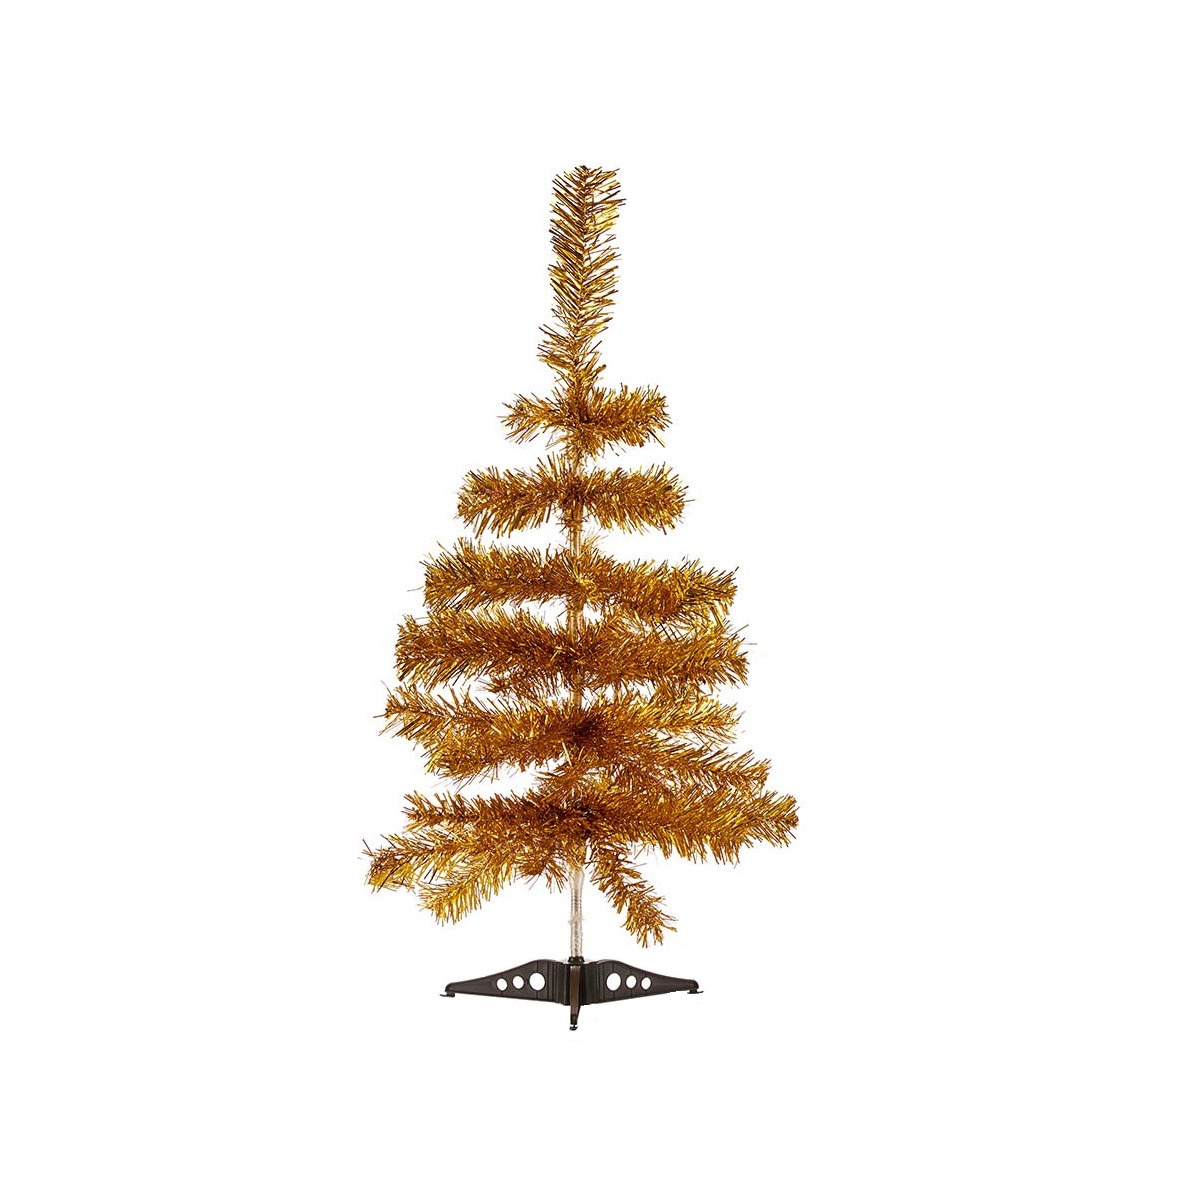 Krist+ kunst kerstboom klein goud 60 cm